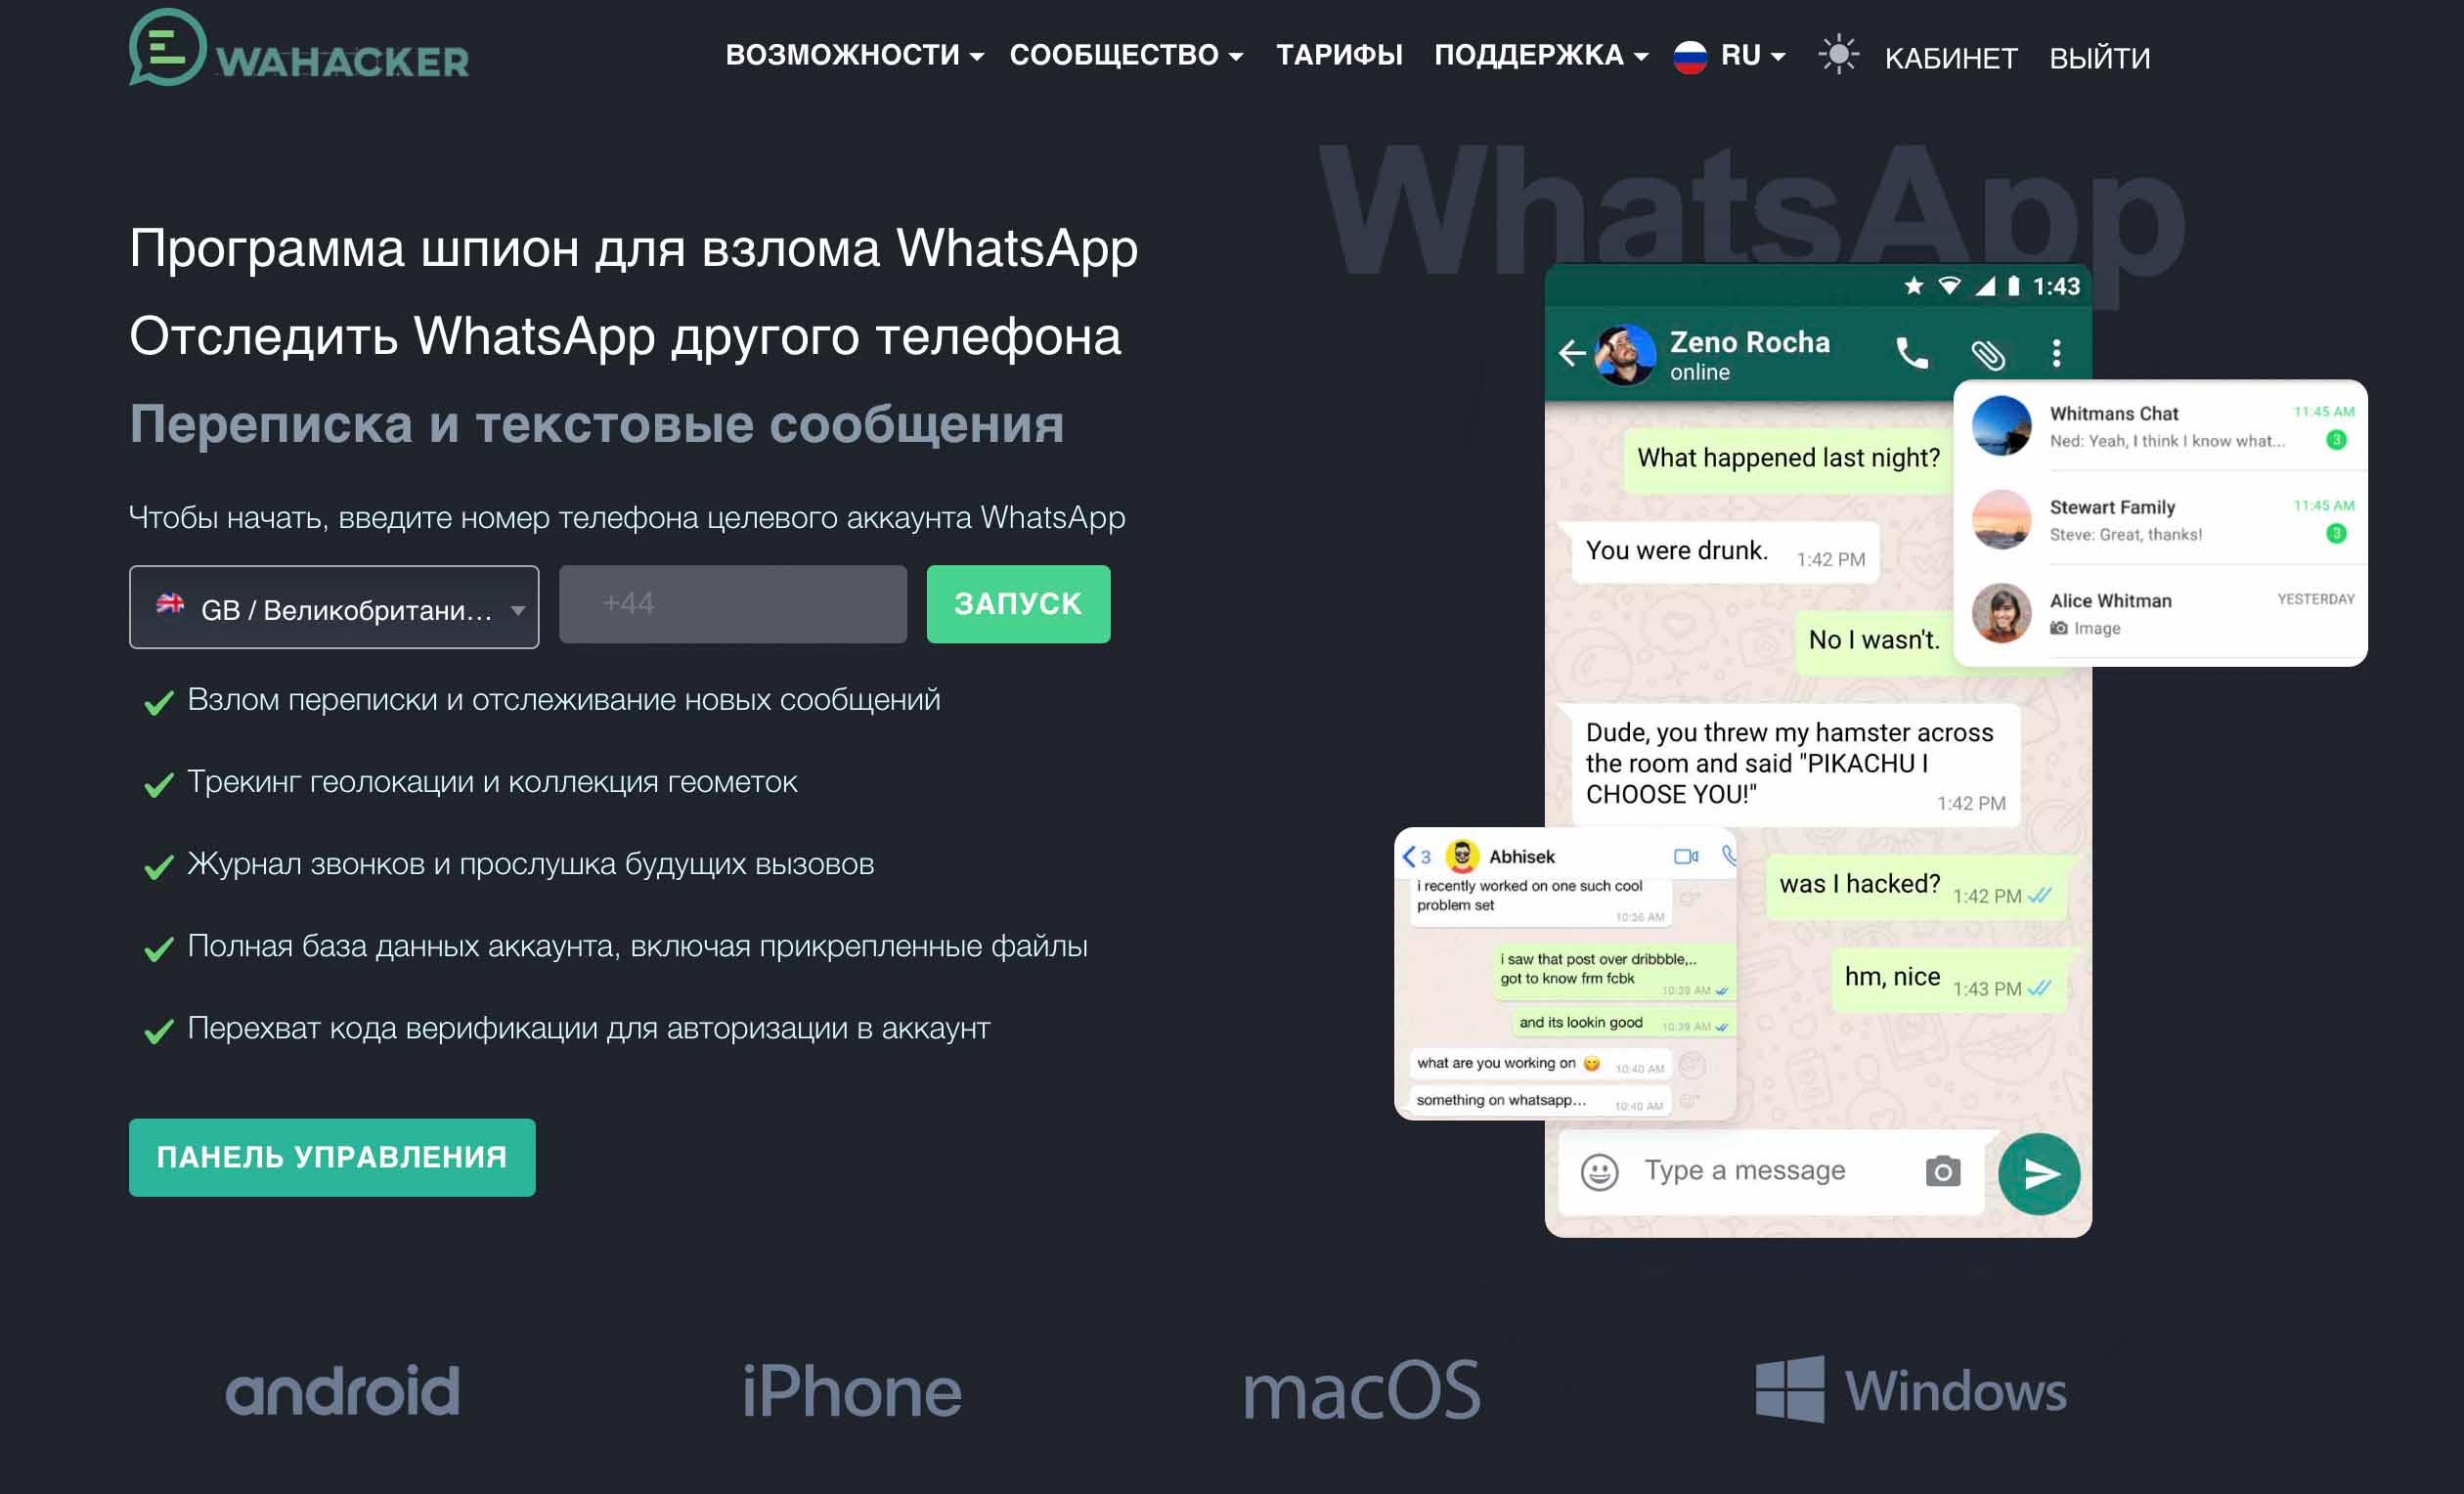 व्हाट्सएप में अन्य लोगों के संदेश पढ़ने के लिए WaHacker लॉन्च करें!